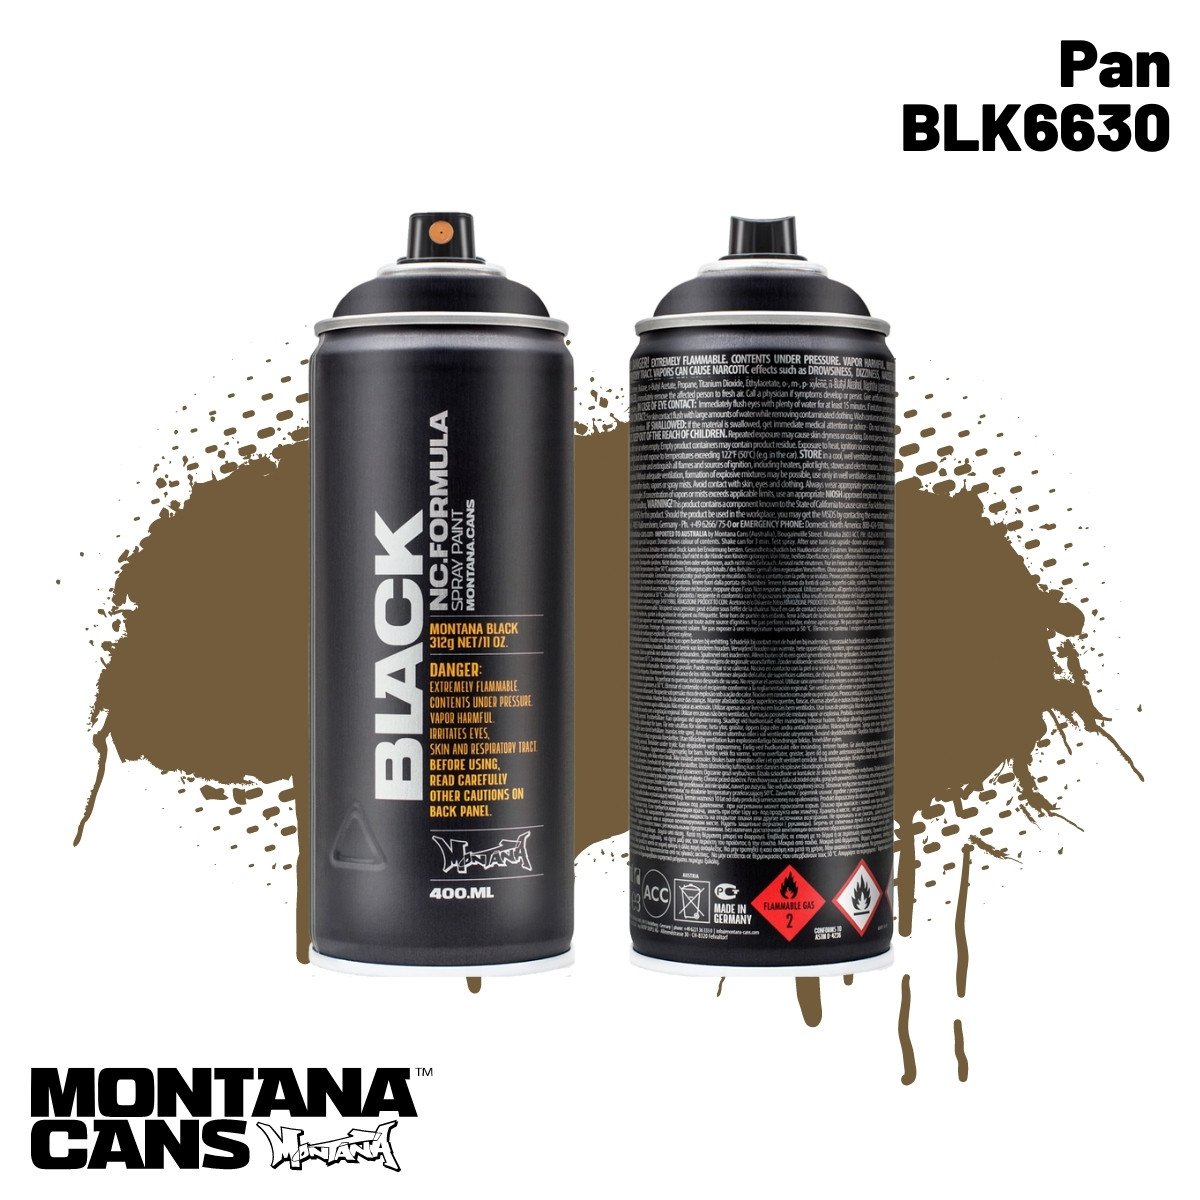 Montana Black Sprey Boya 400ml BLK6630 Pan